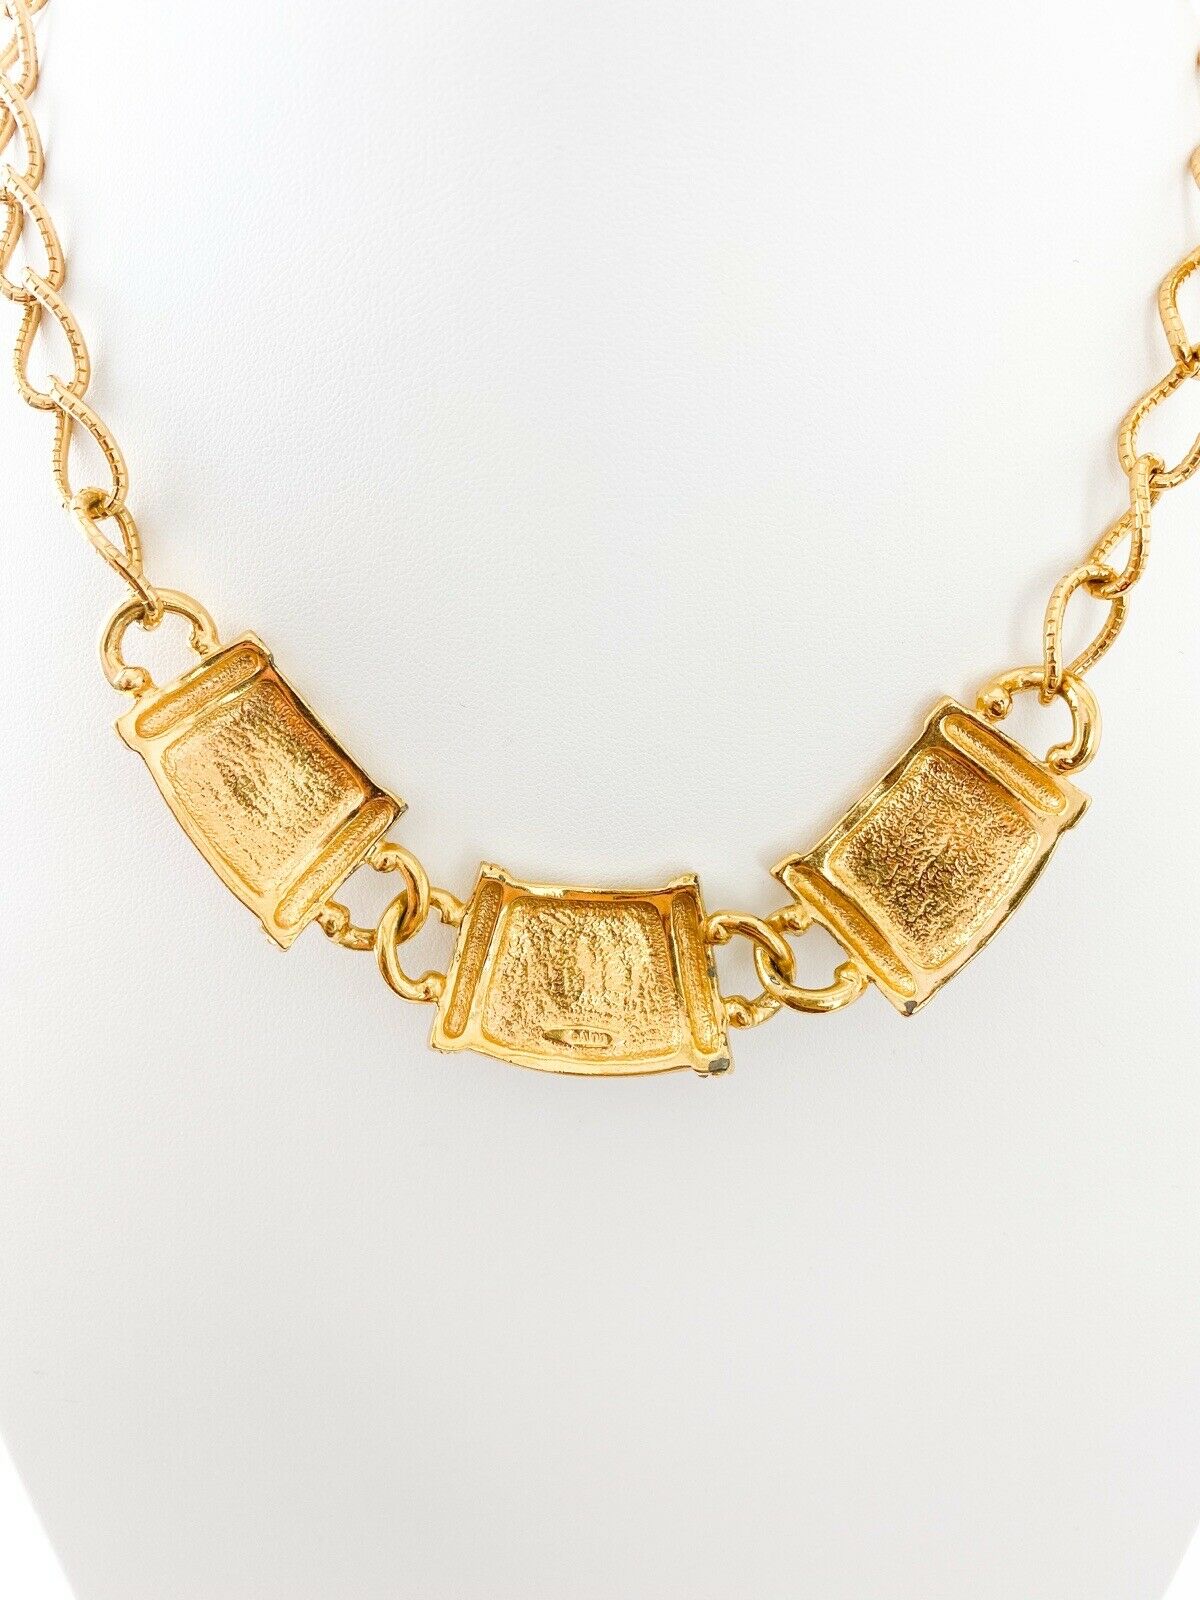 Avon Vintage Gold Tone Chain Necklace Multi-color Cabochon Charm